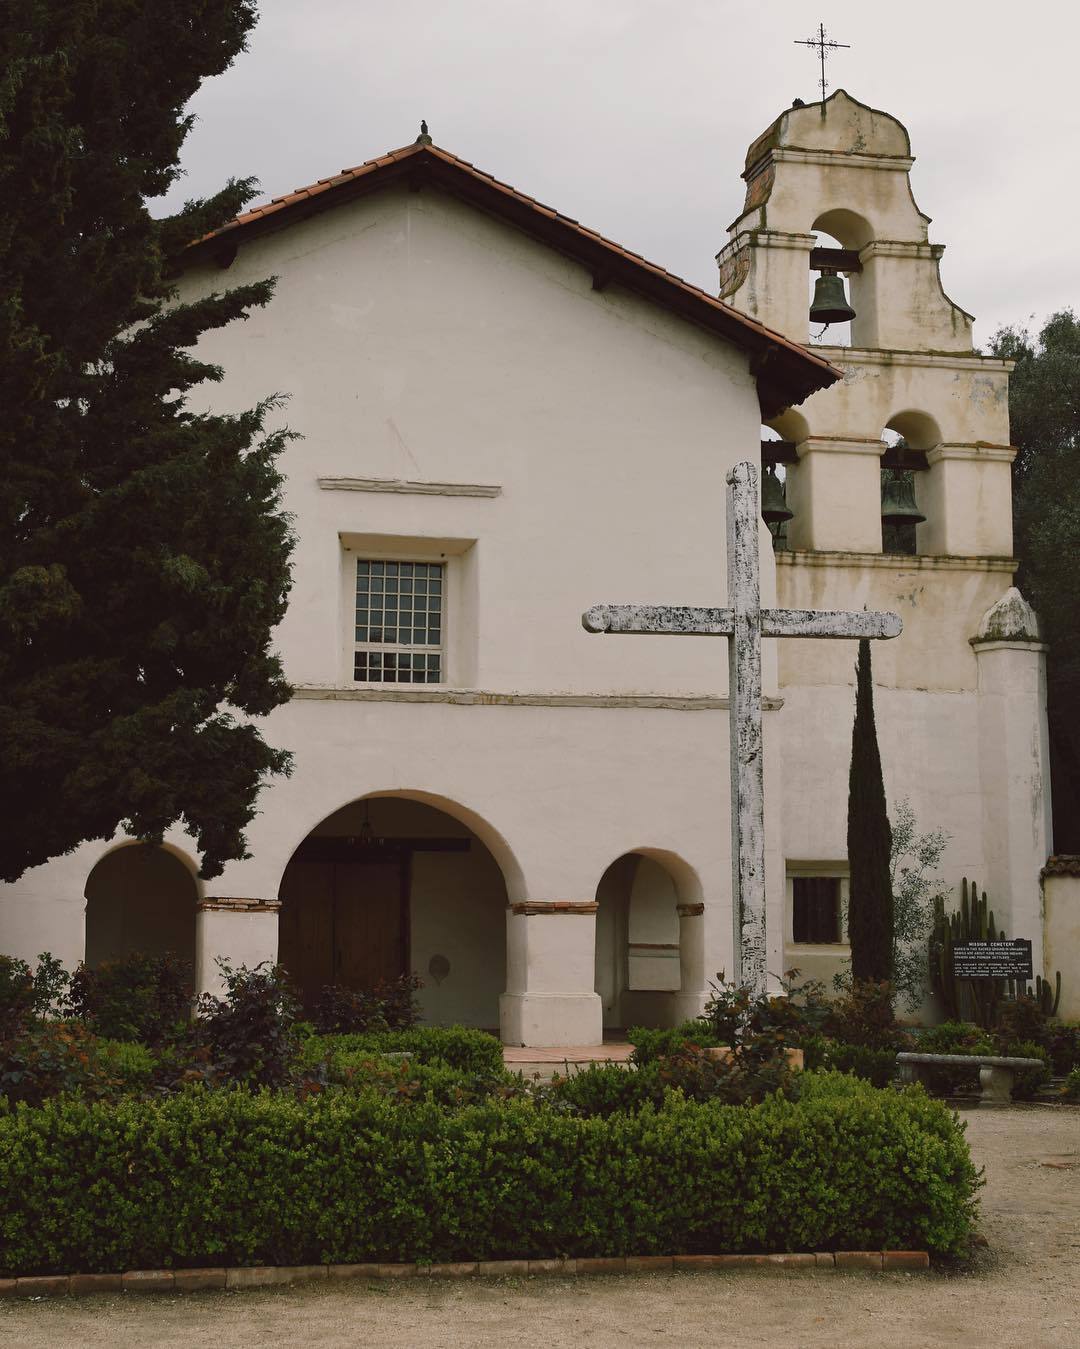 Old Mission. #rnifilms #vscocam (at Mission San Juan Bautista)